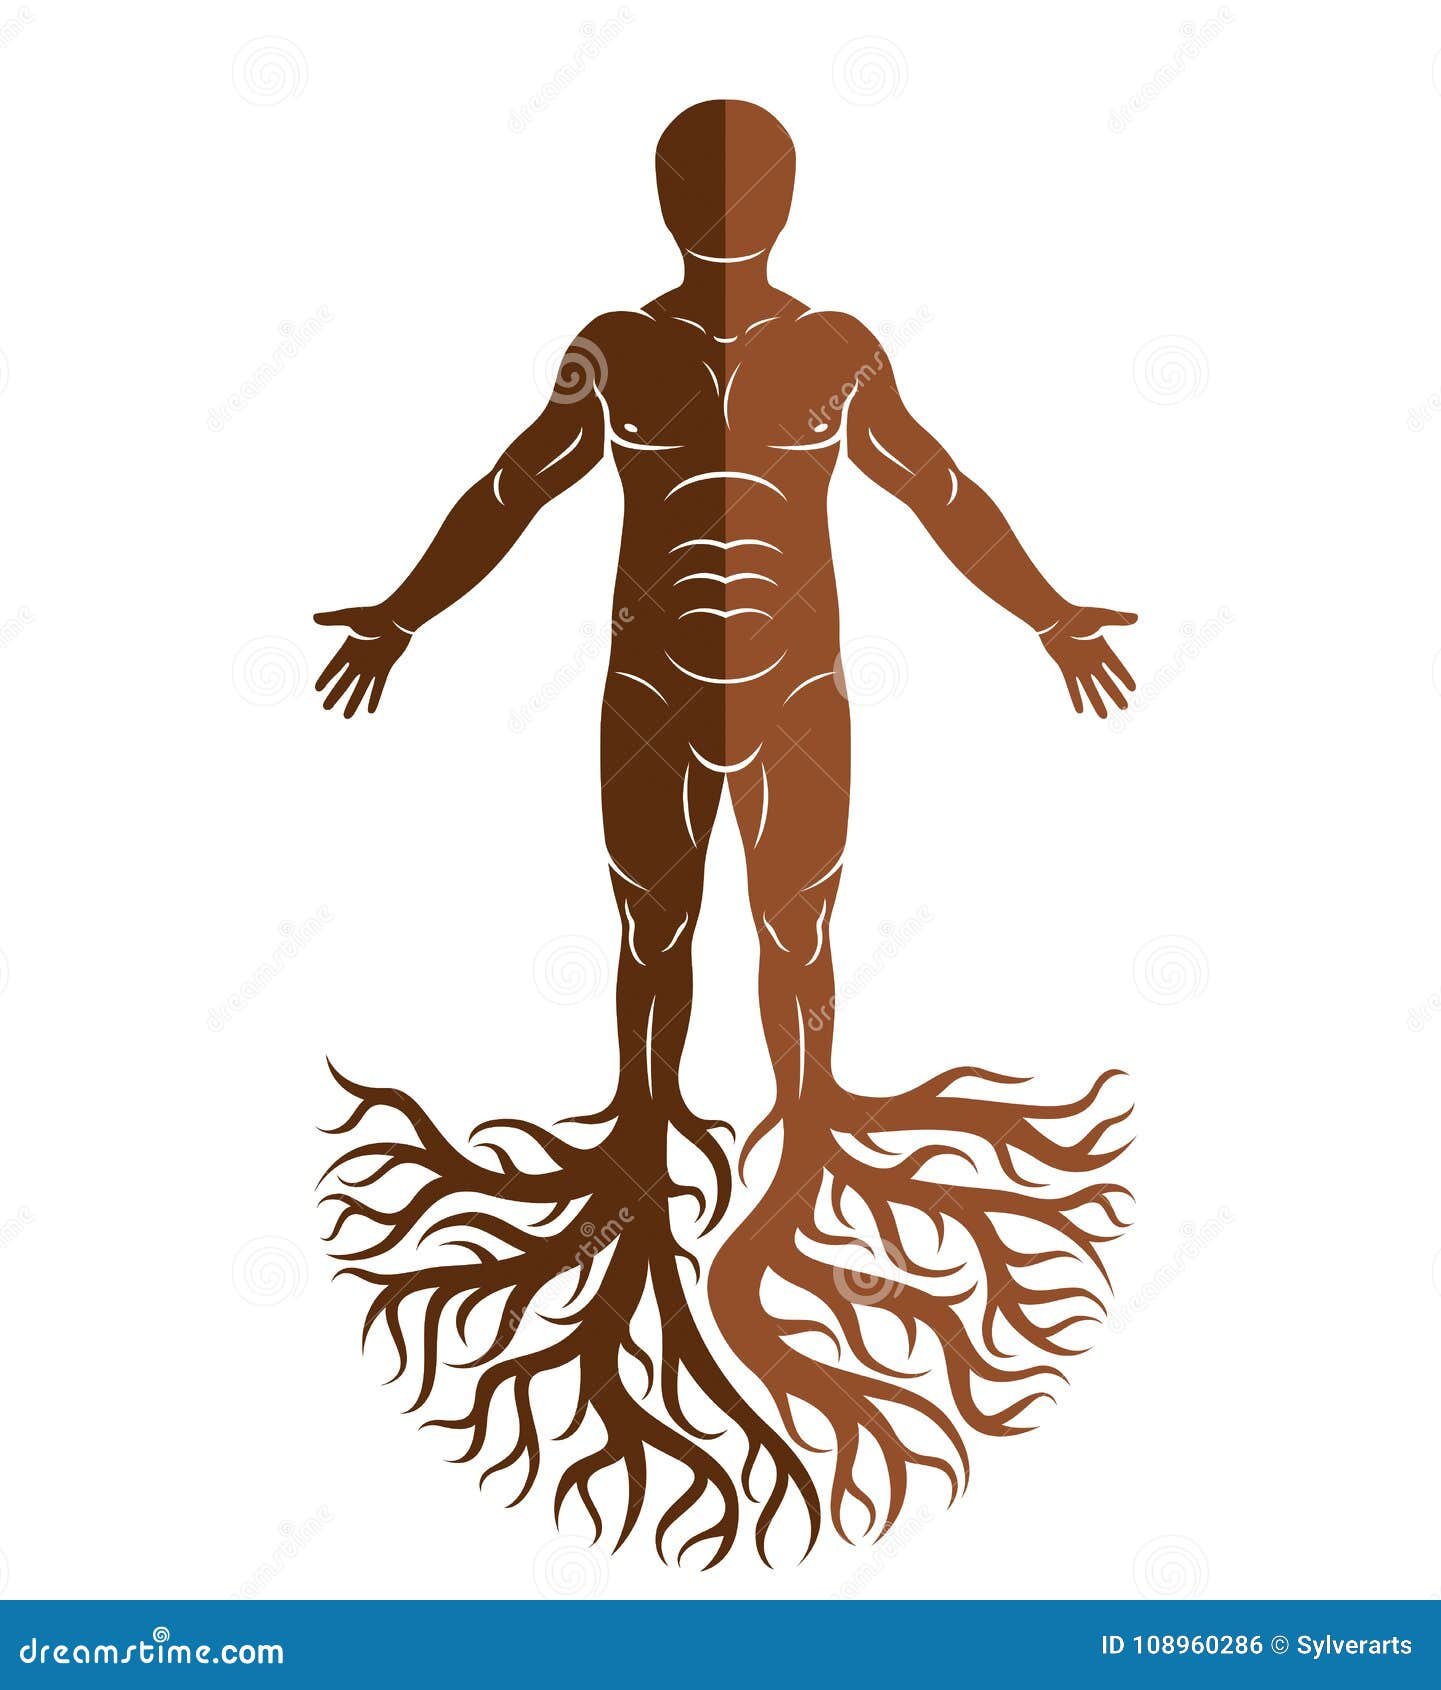 Сотворить корень. Человек дерево вектор. Рисунки человек и дерево абстракт. Силуэт тела и внутри листики.